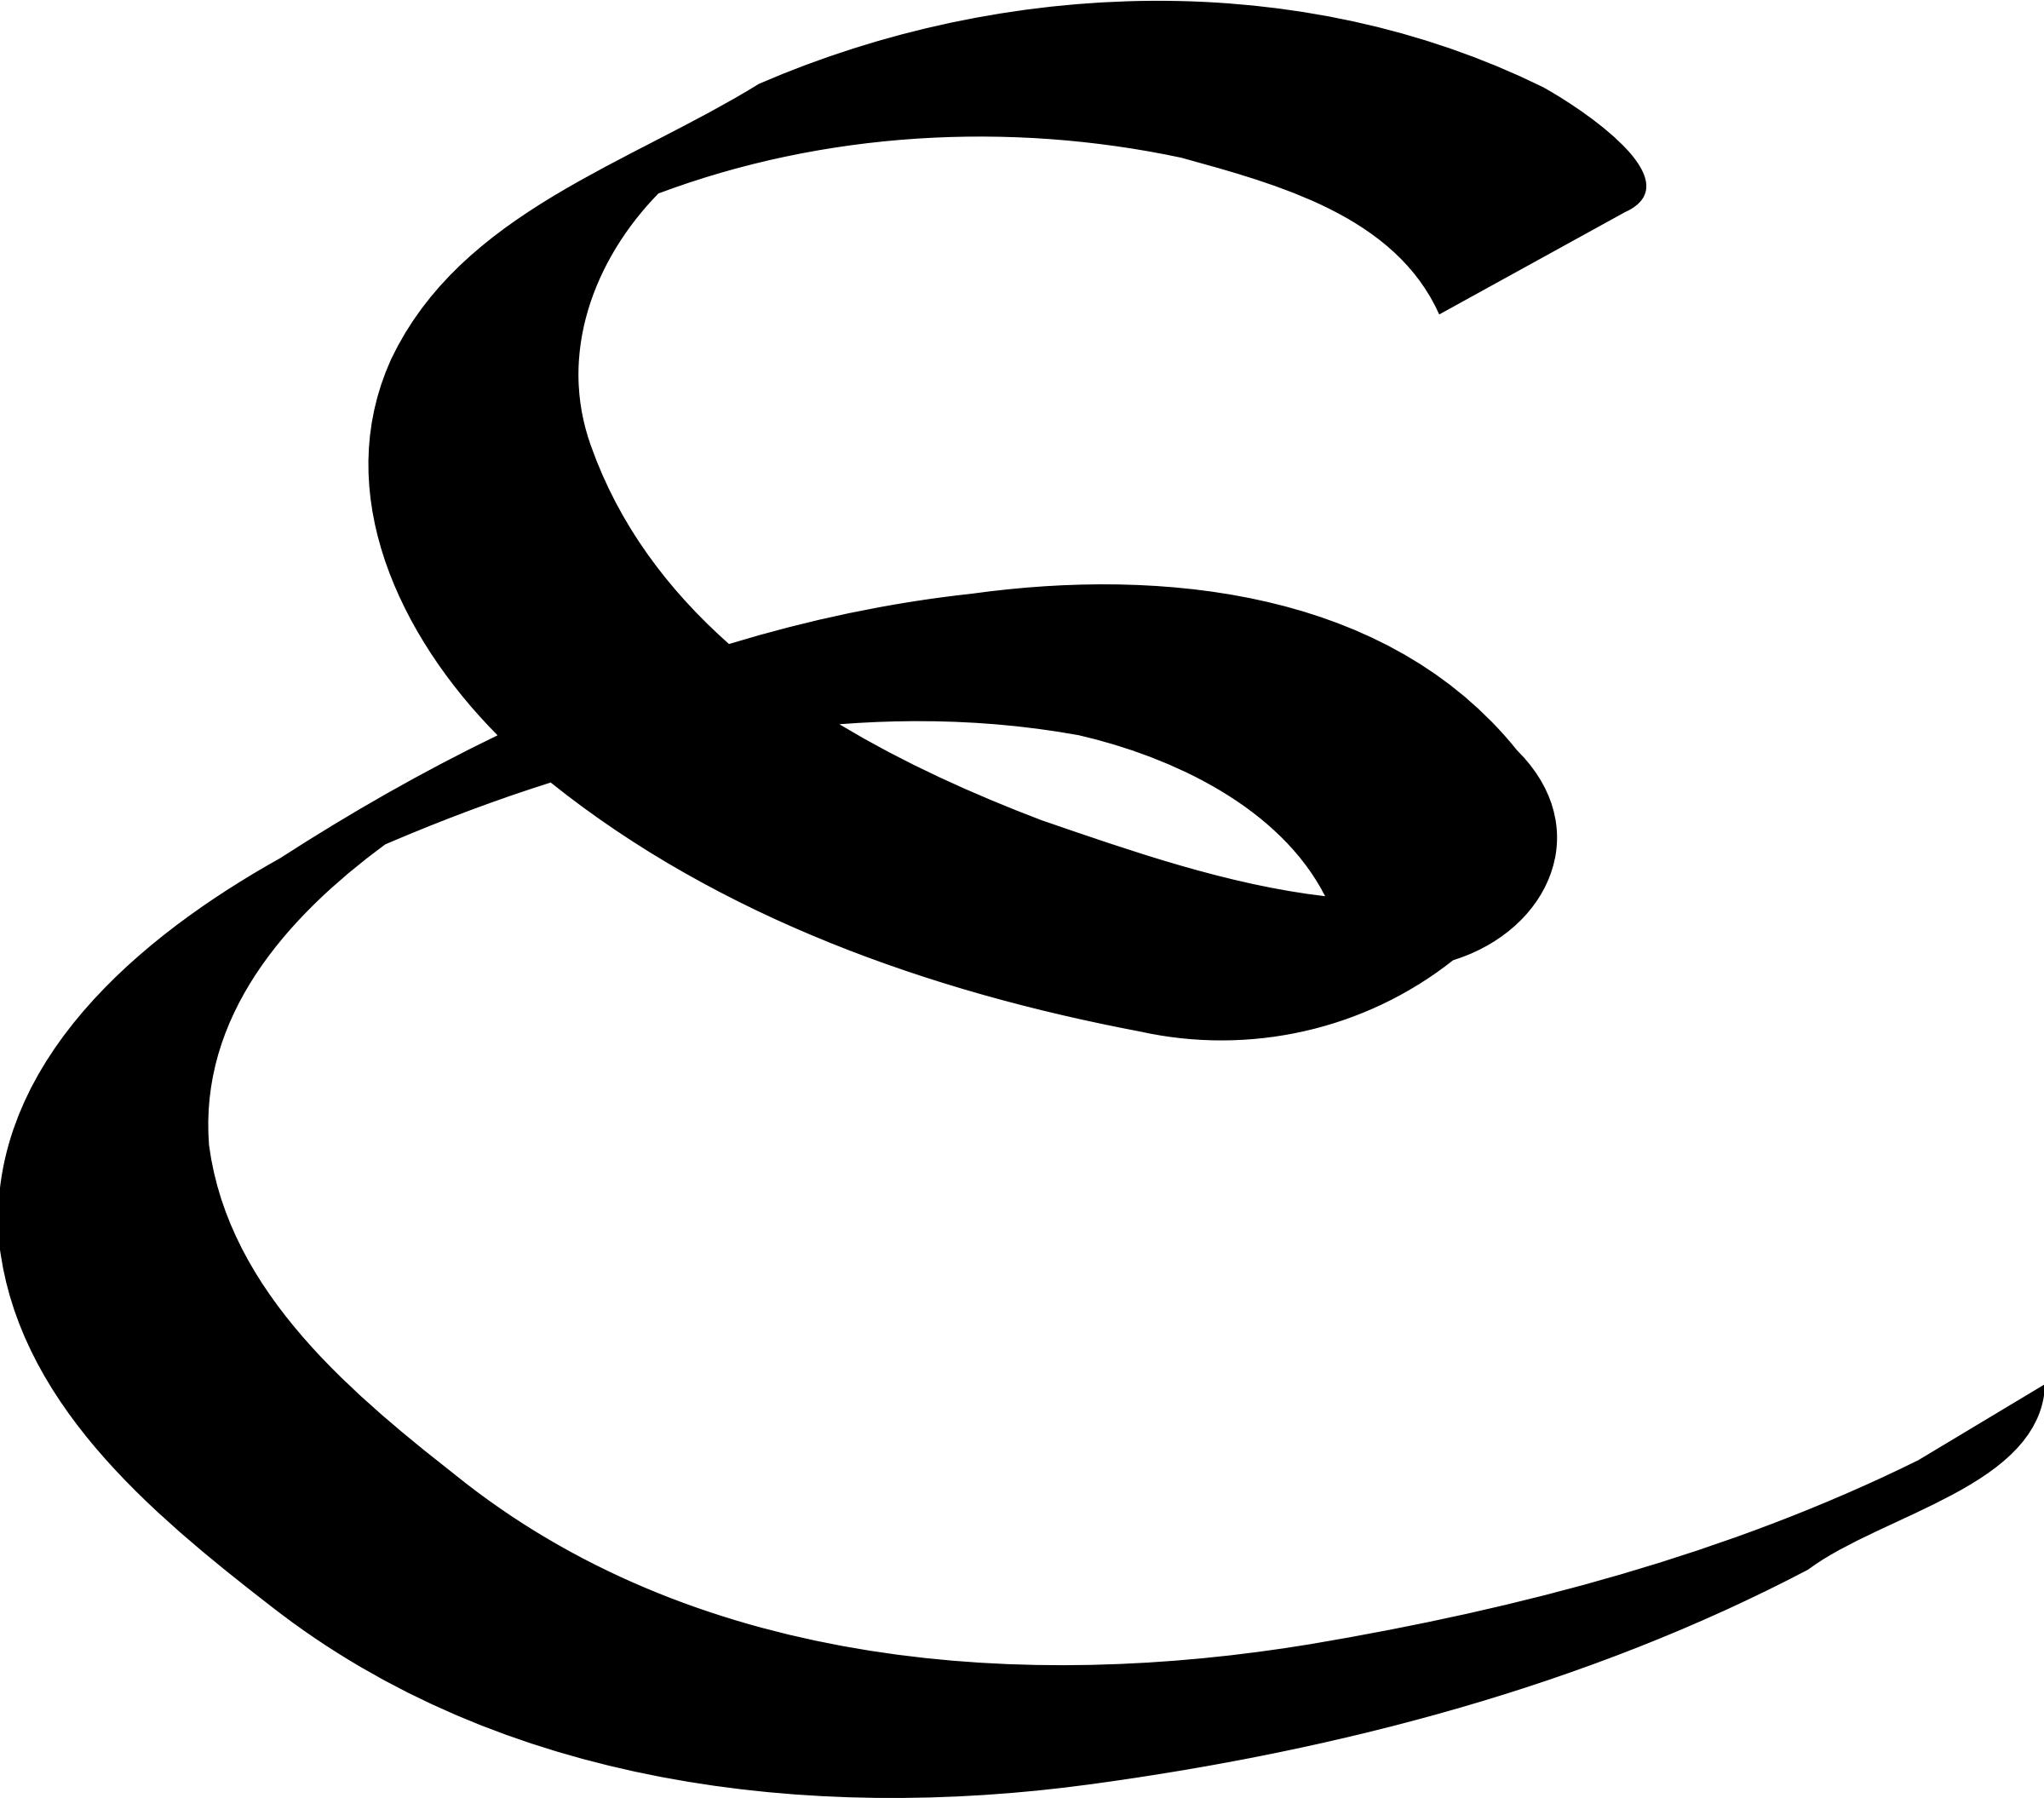 Capital E icons